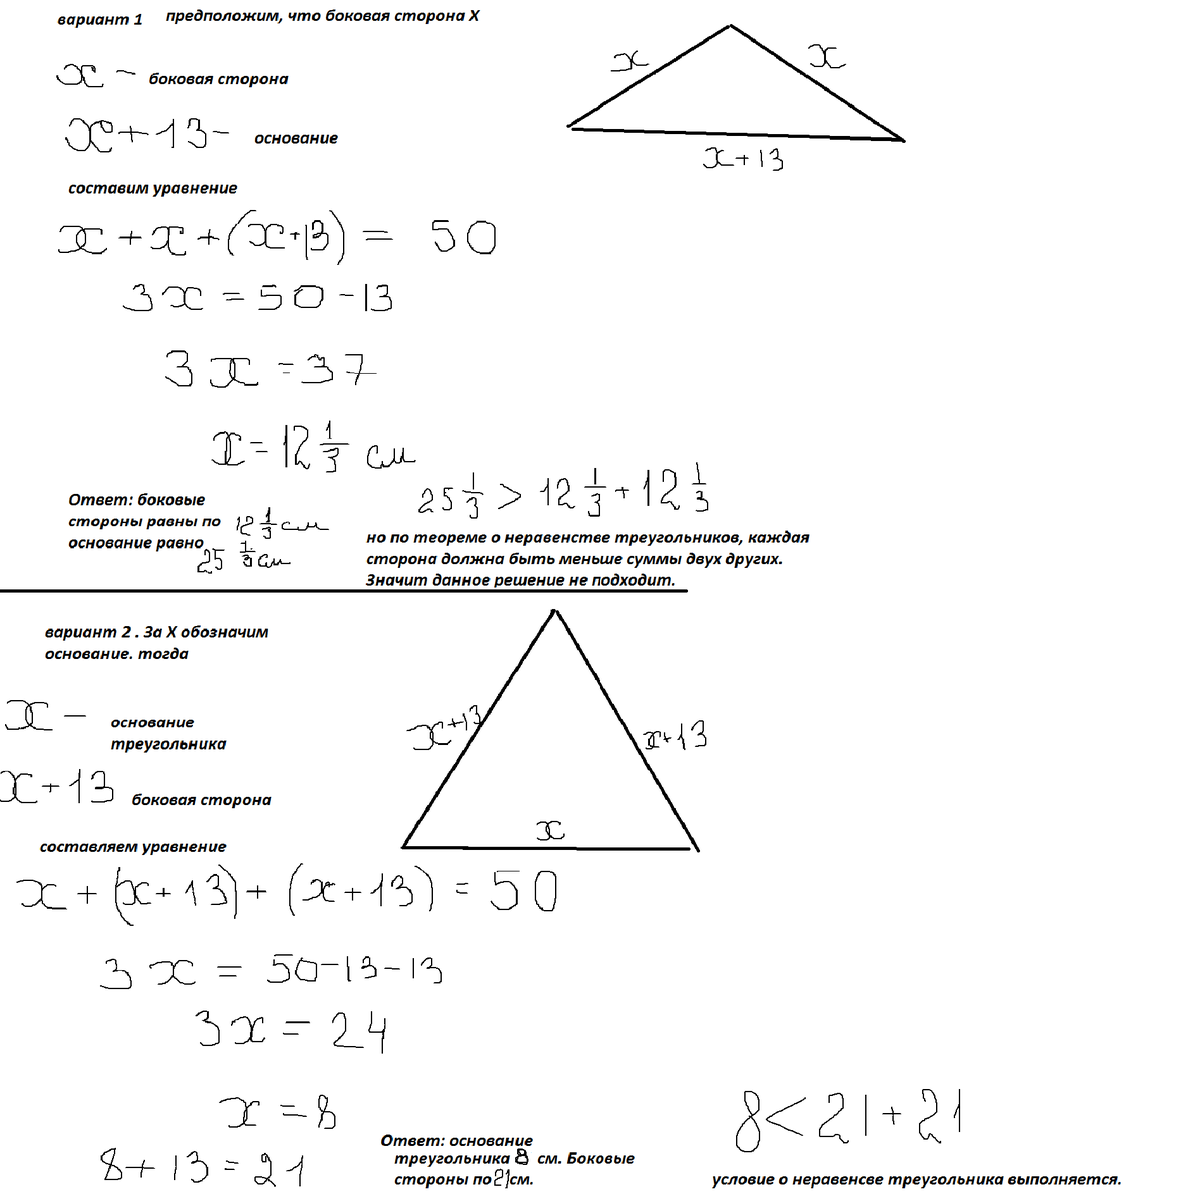 Периметр равнобедренного тупоугольного треугольника равен 108 м. Периметр равнобедренного треугольника. Периметр равнобедренного треугольника равен. Периметр равнобедренного треугольника равен 50. Периметр равнобедренного тупоугольного треугольника.